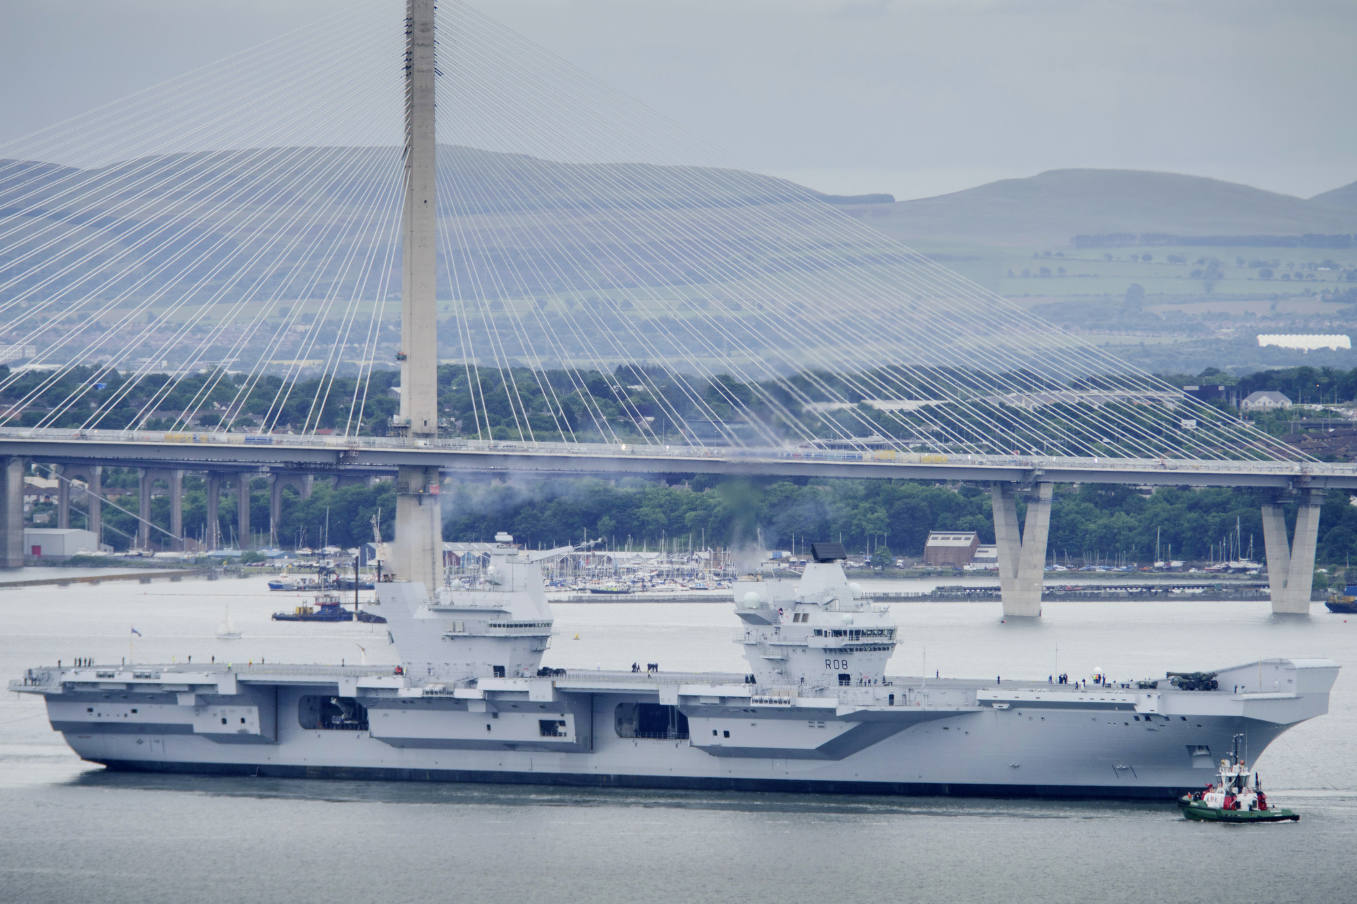 UK’s Queen Elizabeth carrier starts sea trials